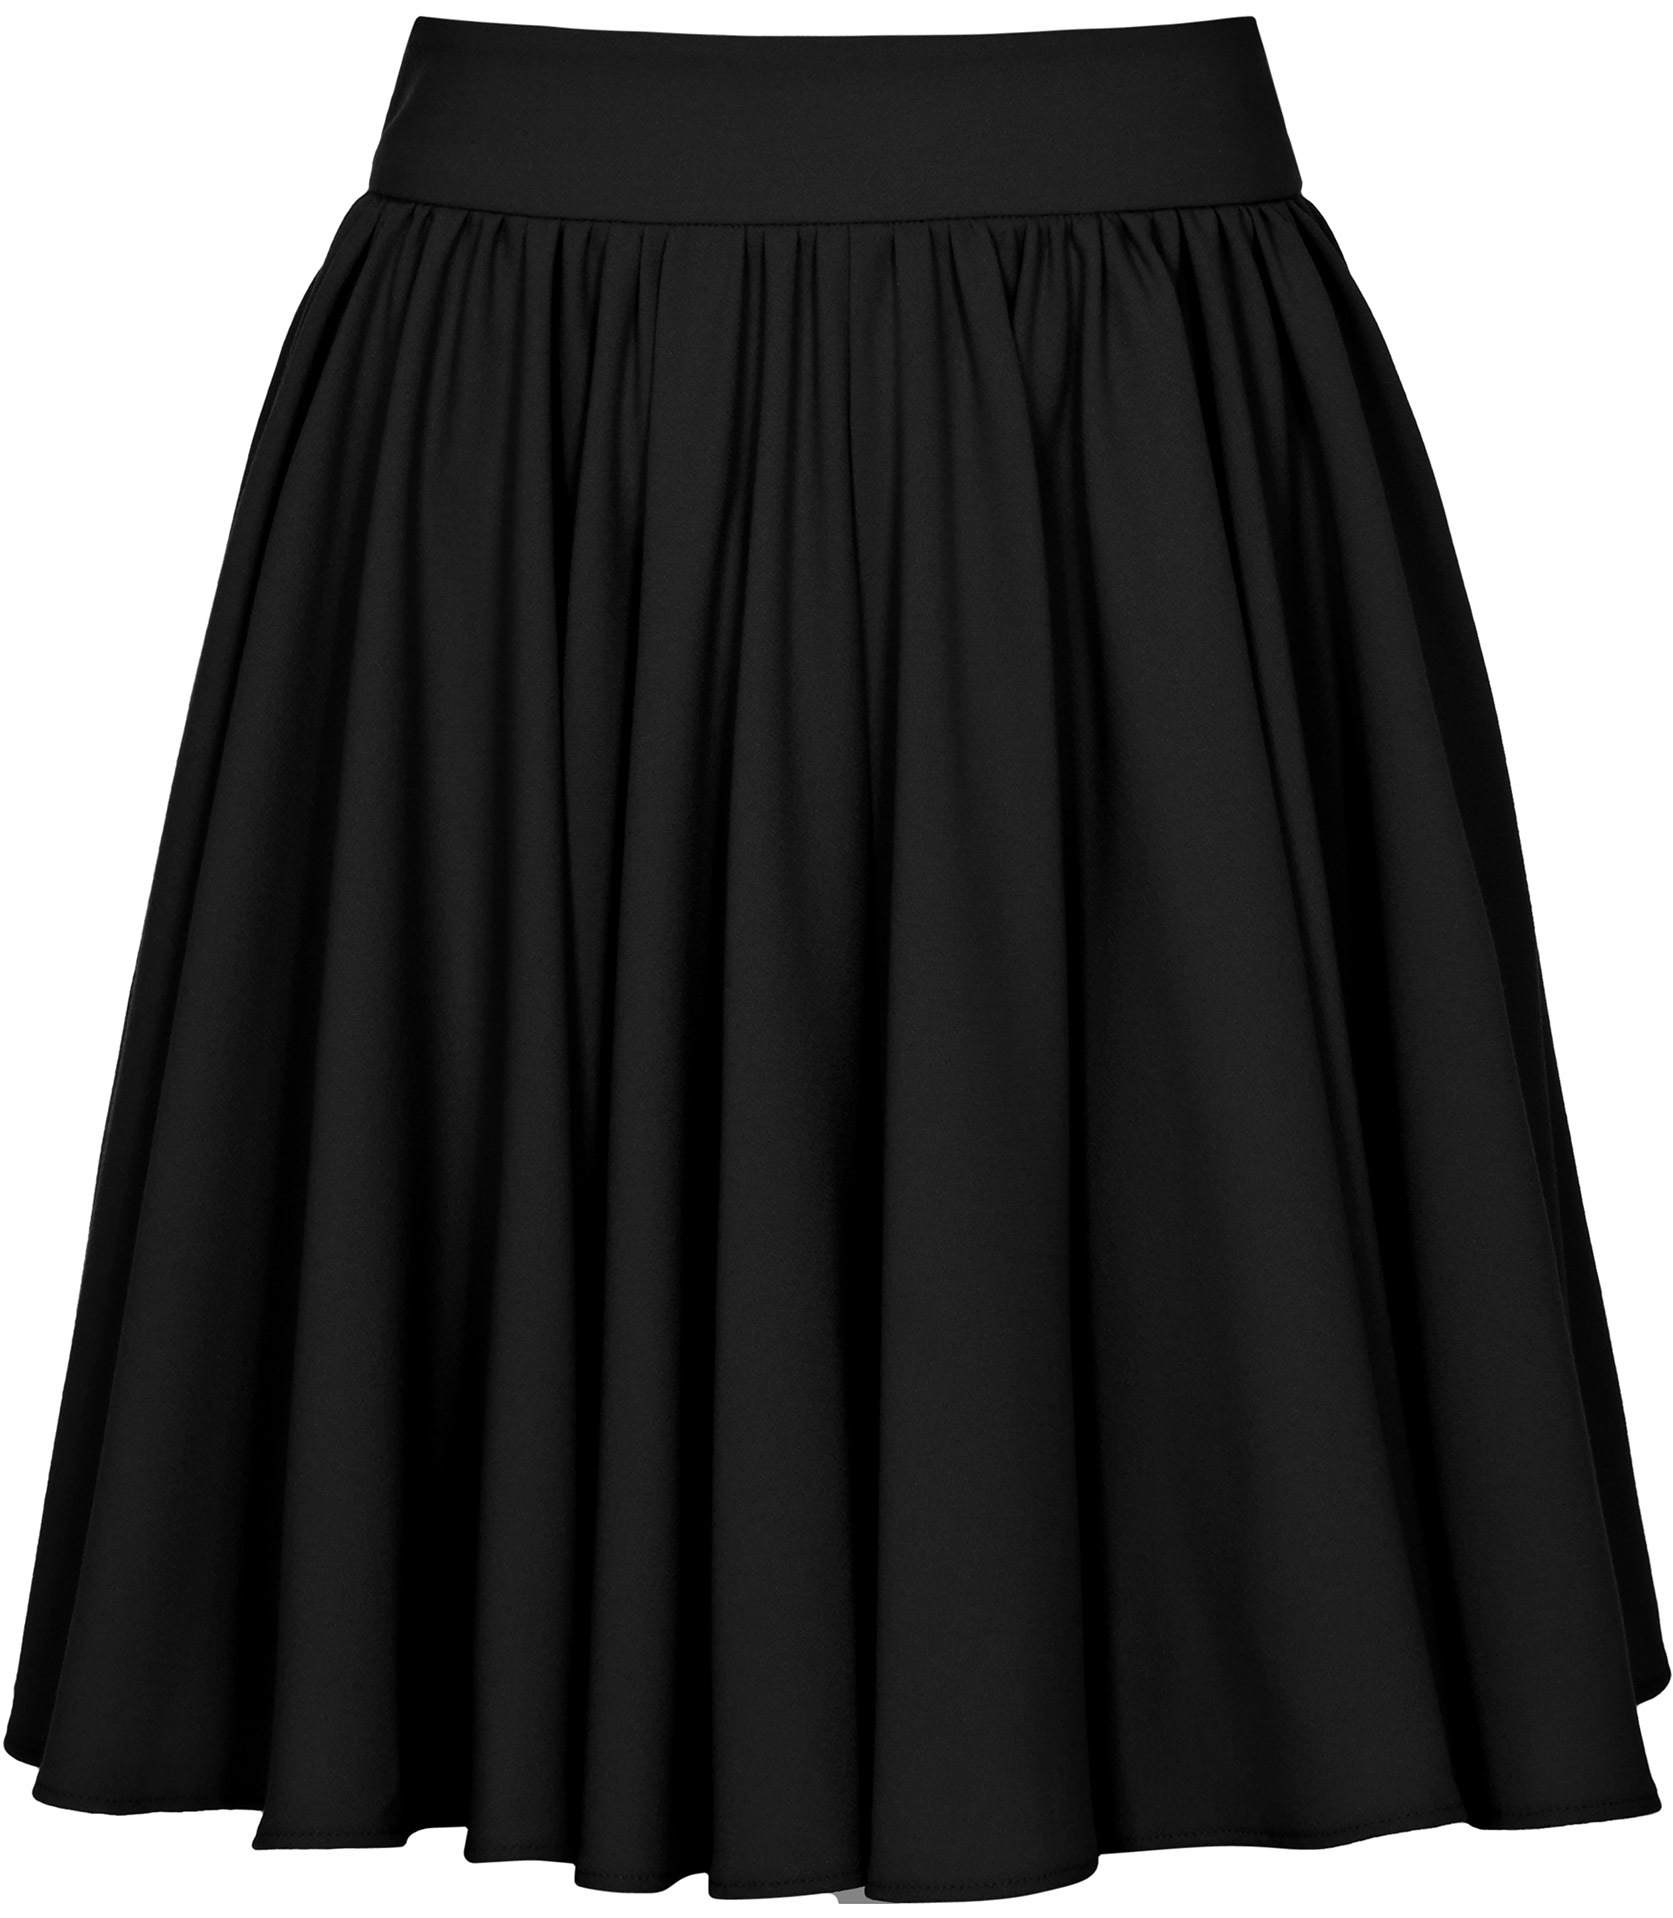 Reiss Alana Full Gathered Skirt in Black - Lyst